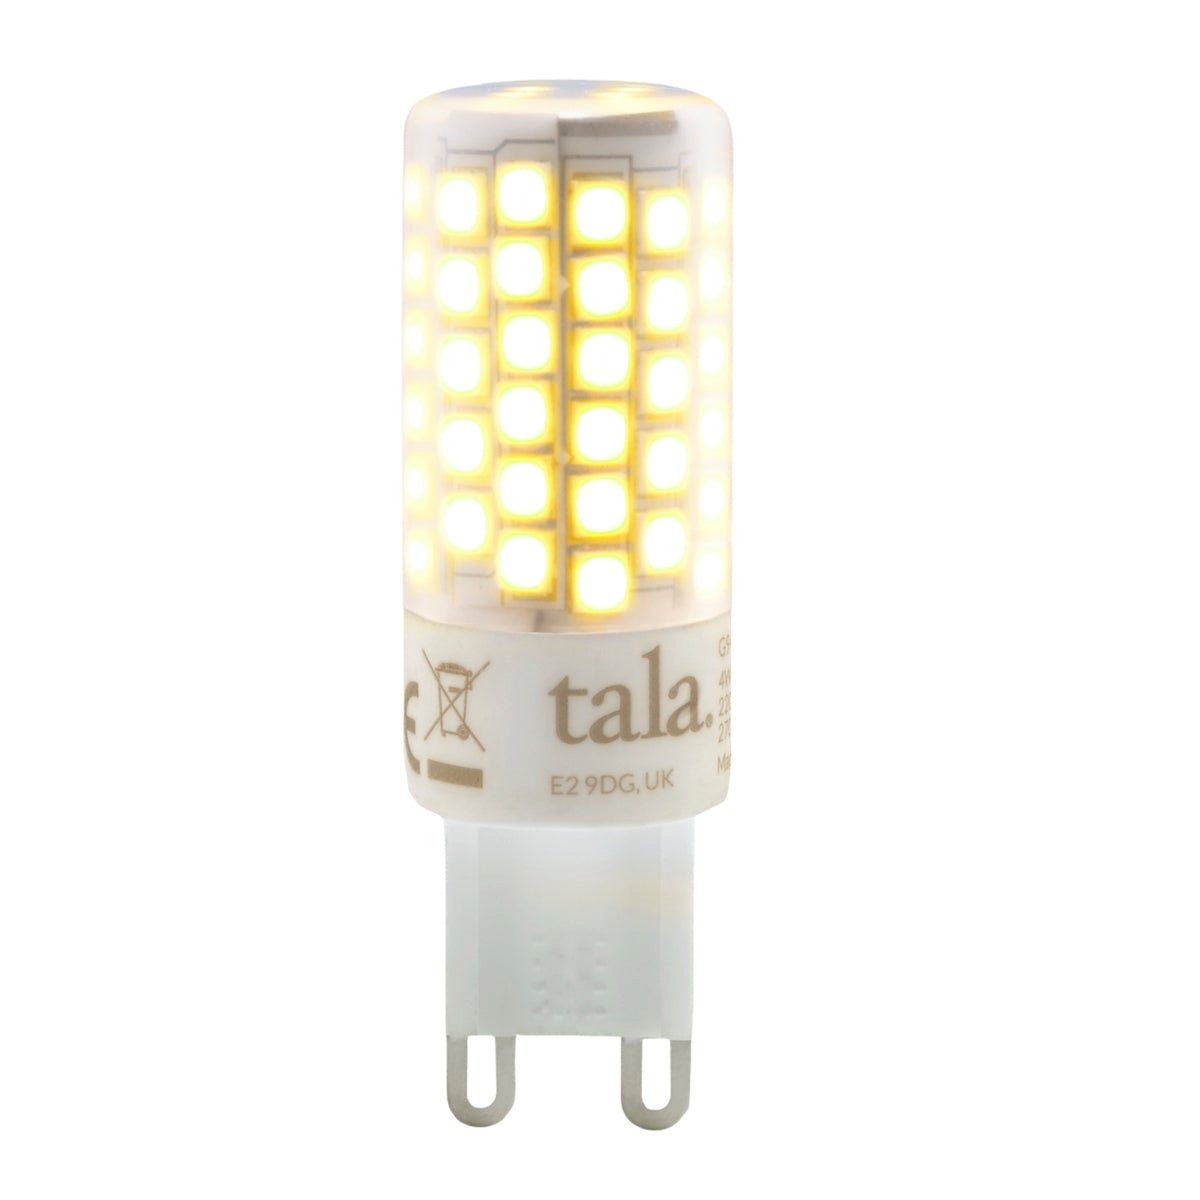 Dimmbar - Watt, Warmweiß, 3,6 tala G9 LED Tala G9, LED-Leuchtmittel